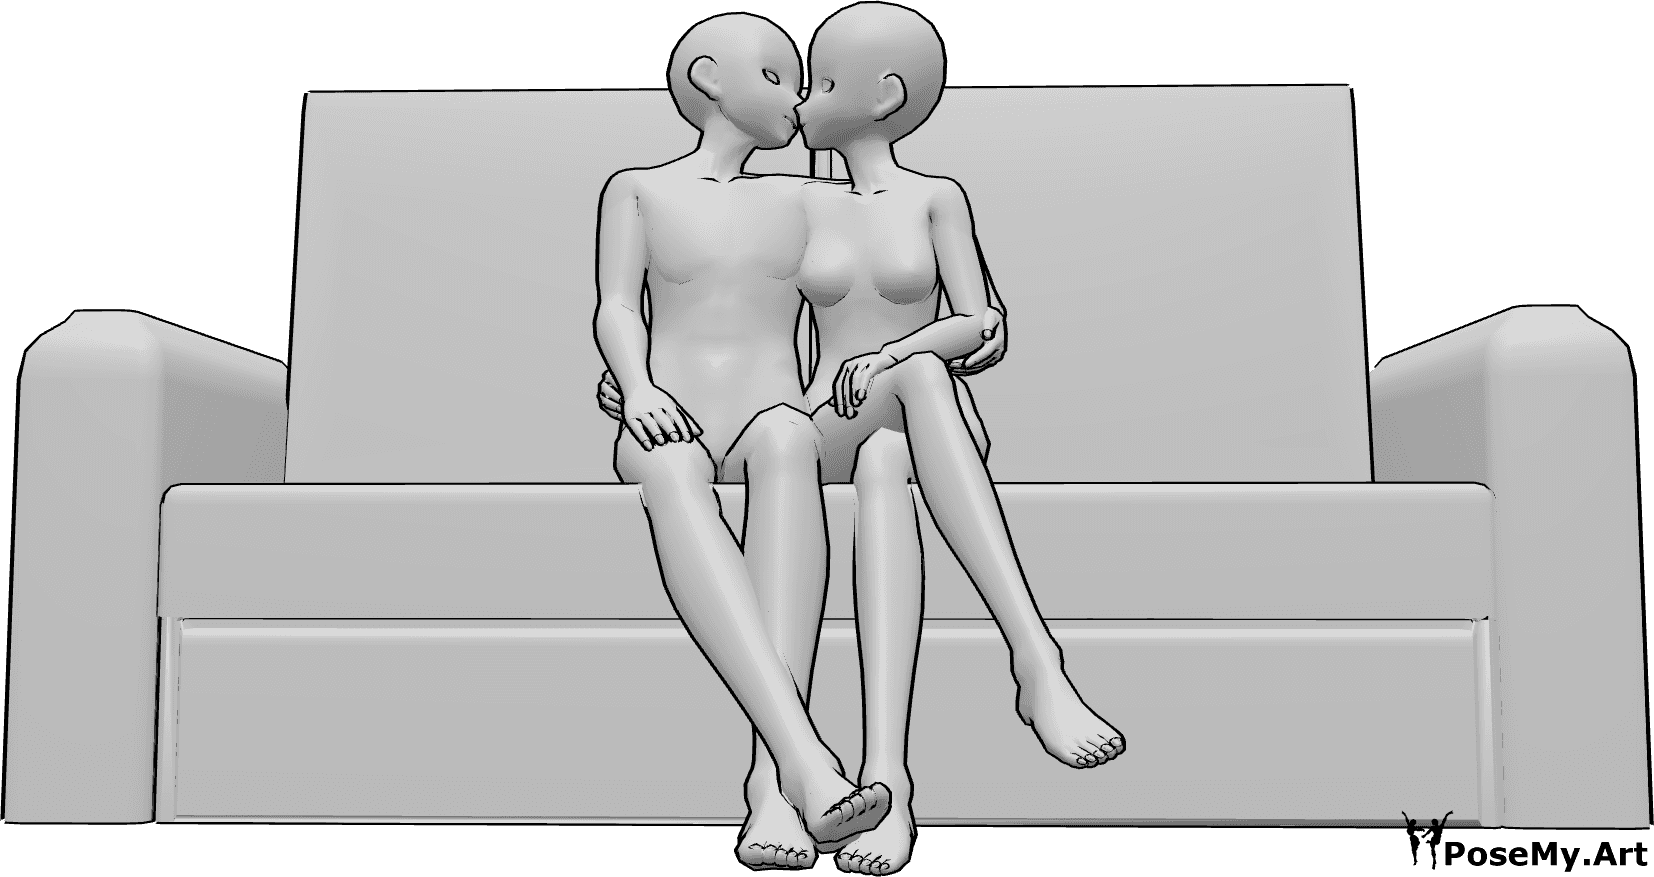 Posen-Referenz- Anime sitzend küssende Pose - Anime Paar sitzt auf der Couch und küssen, Anime Paar küssen Pose